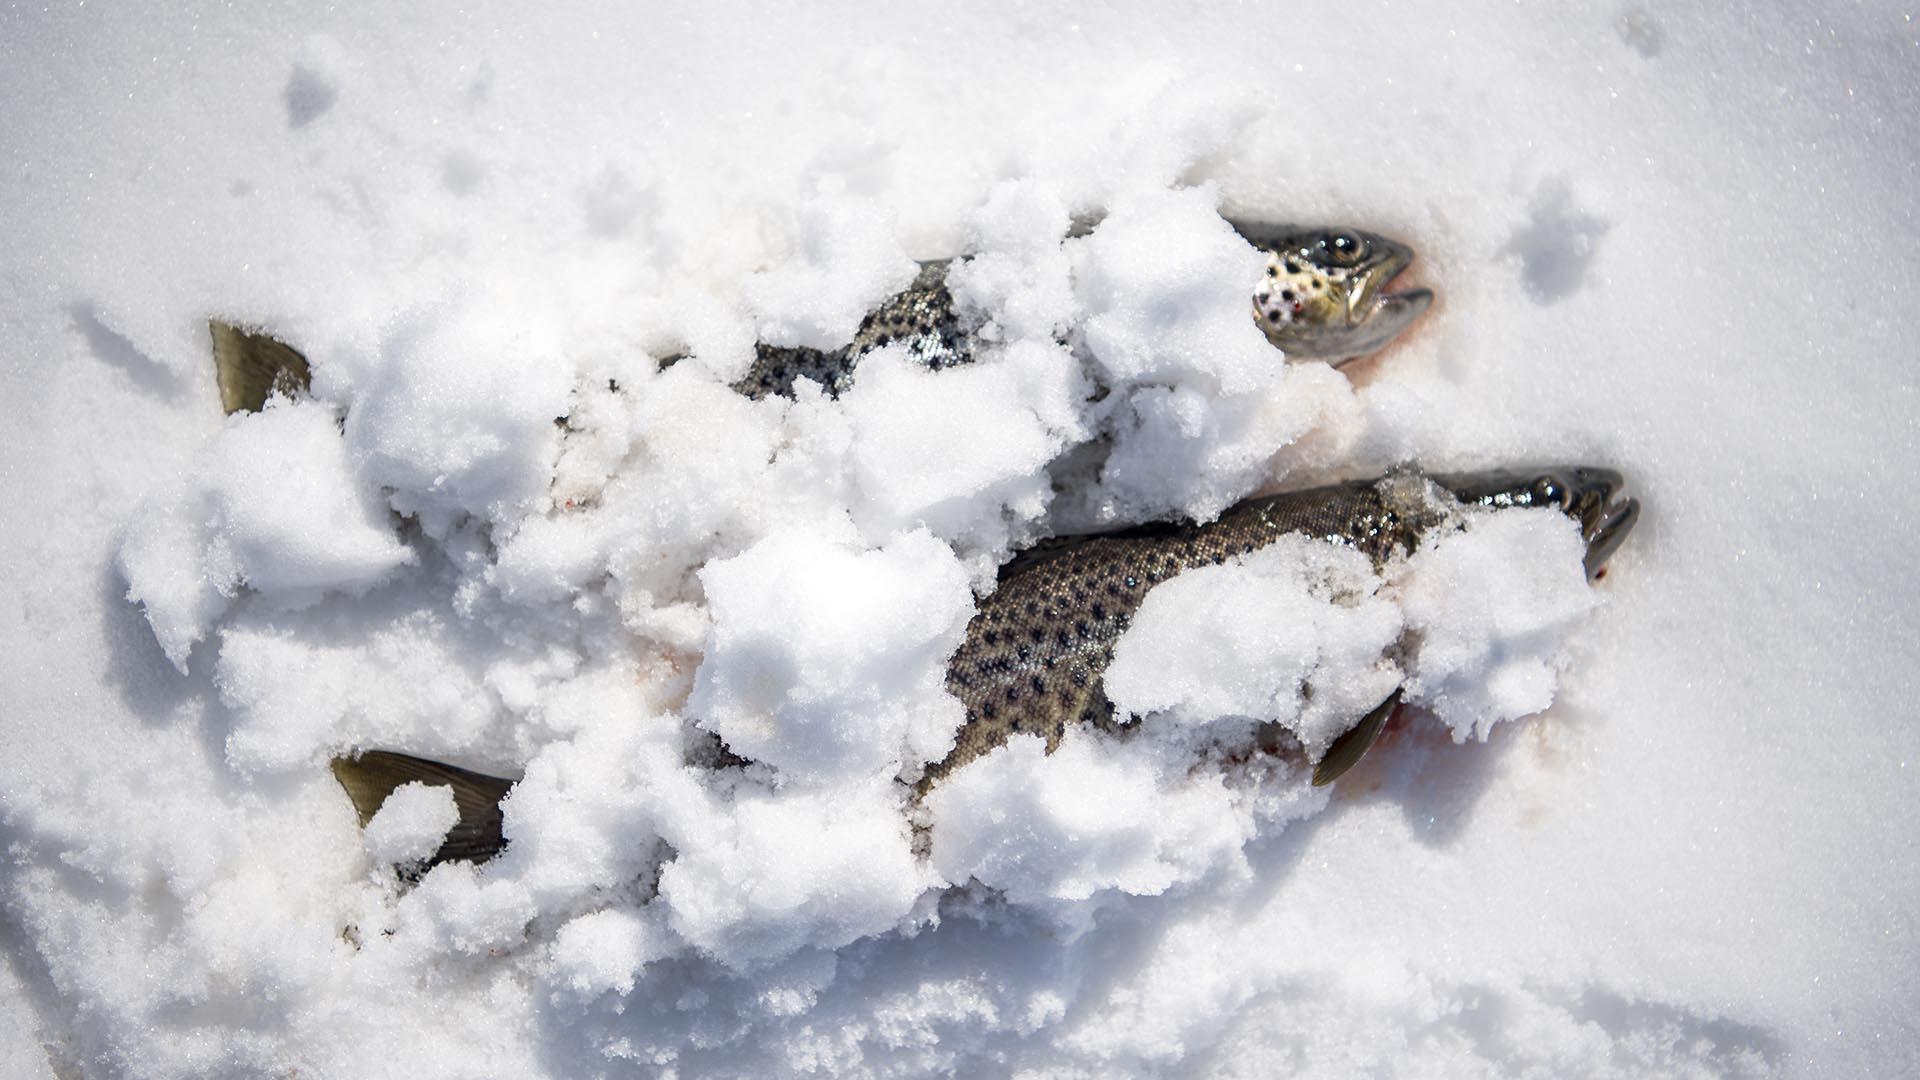 Isfisket ørret gravd ned i snøen for å holdes nedkjølt.